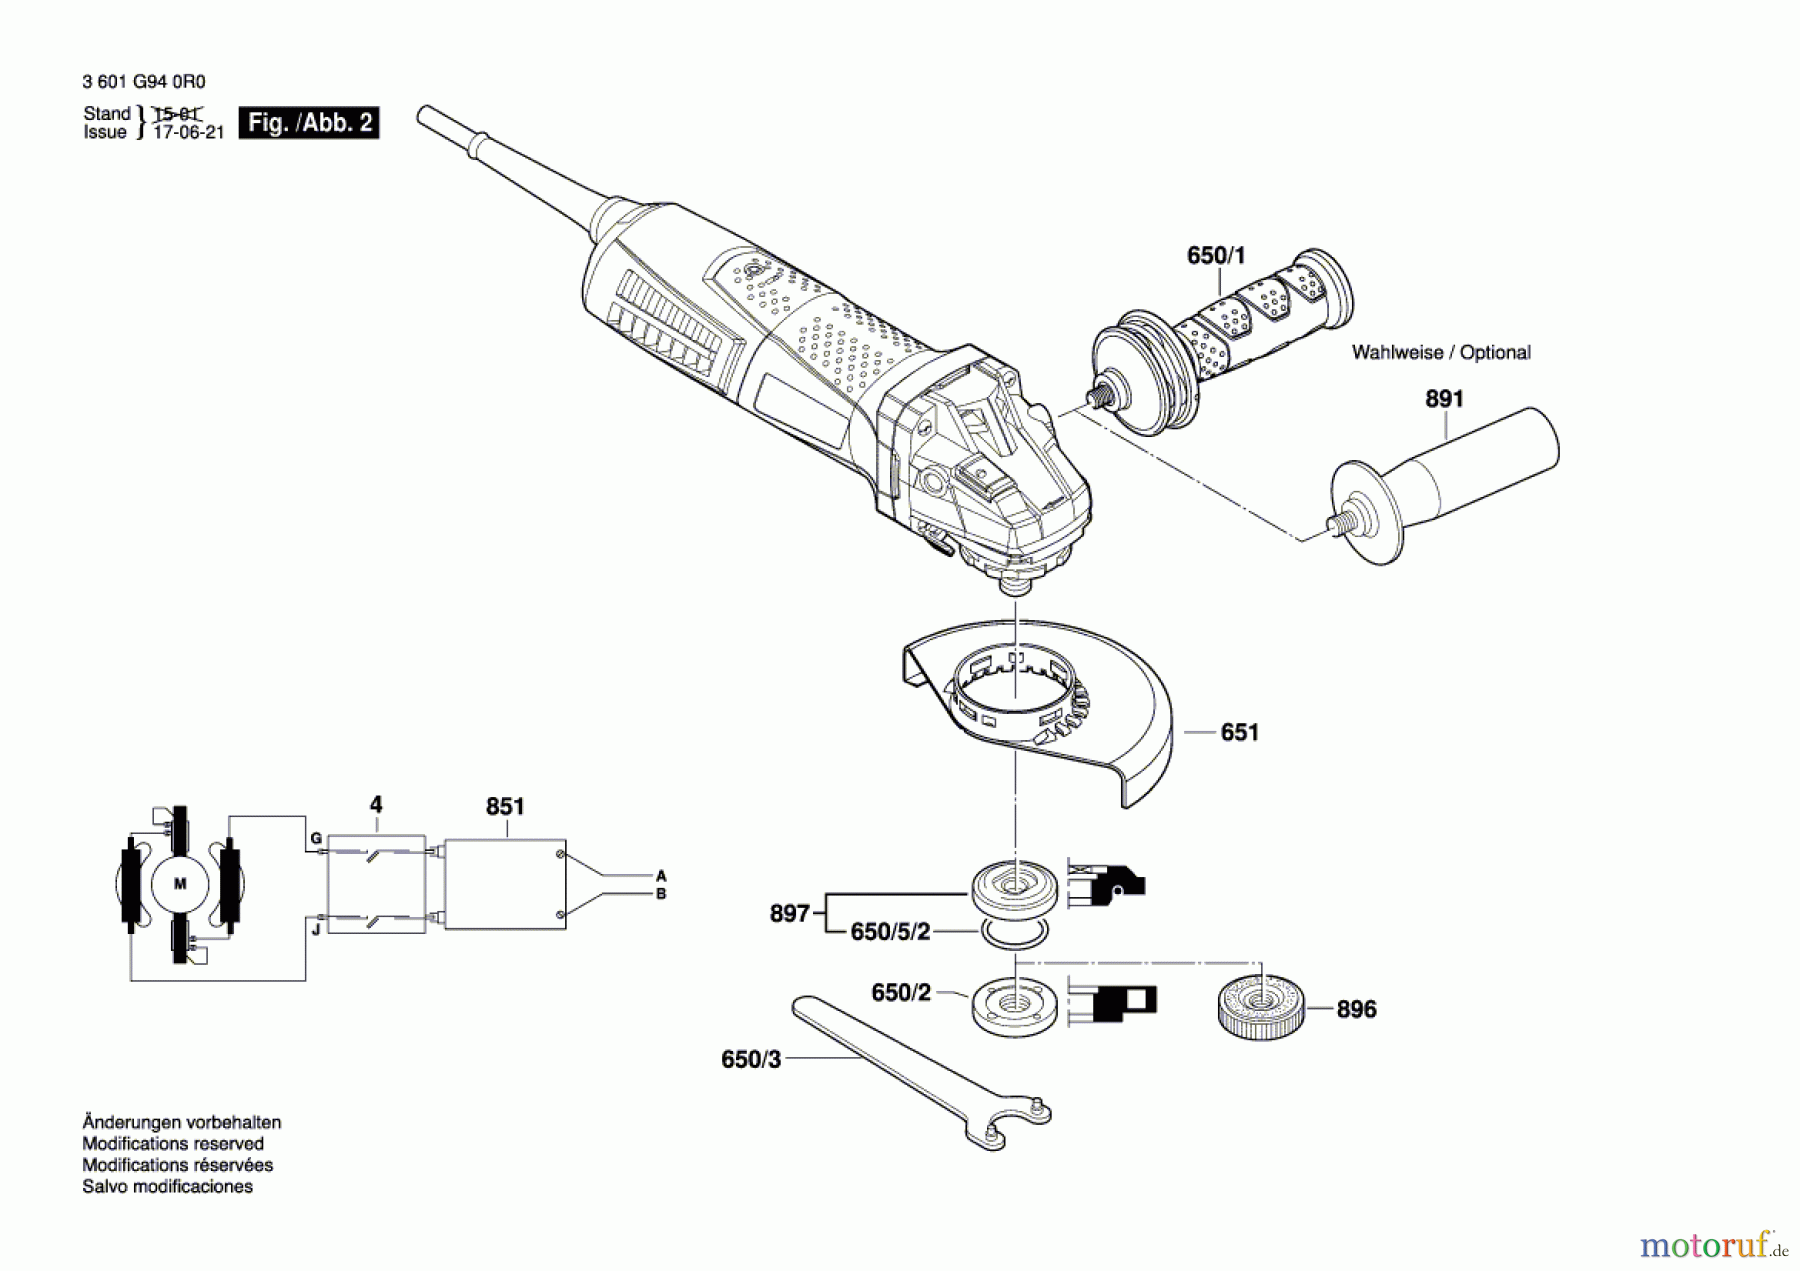  Bosch Werkzeug Winkelschleifer GWS 13-125 CIE Seite 2